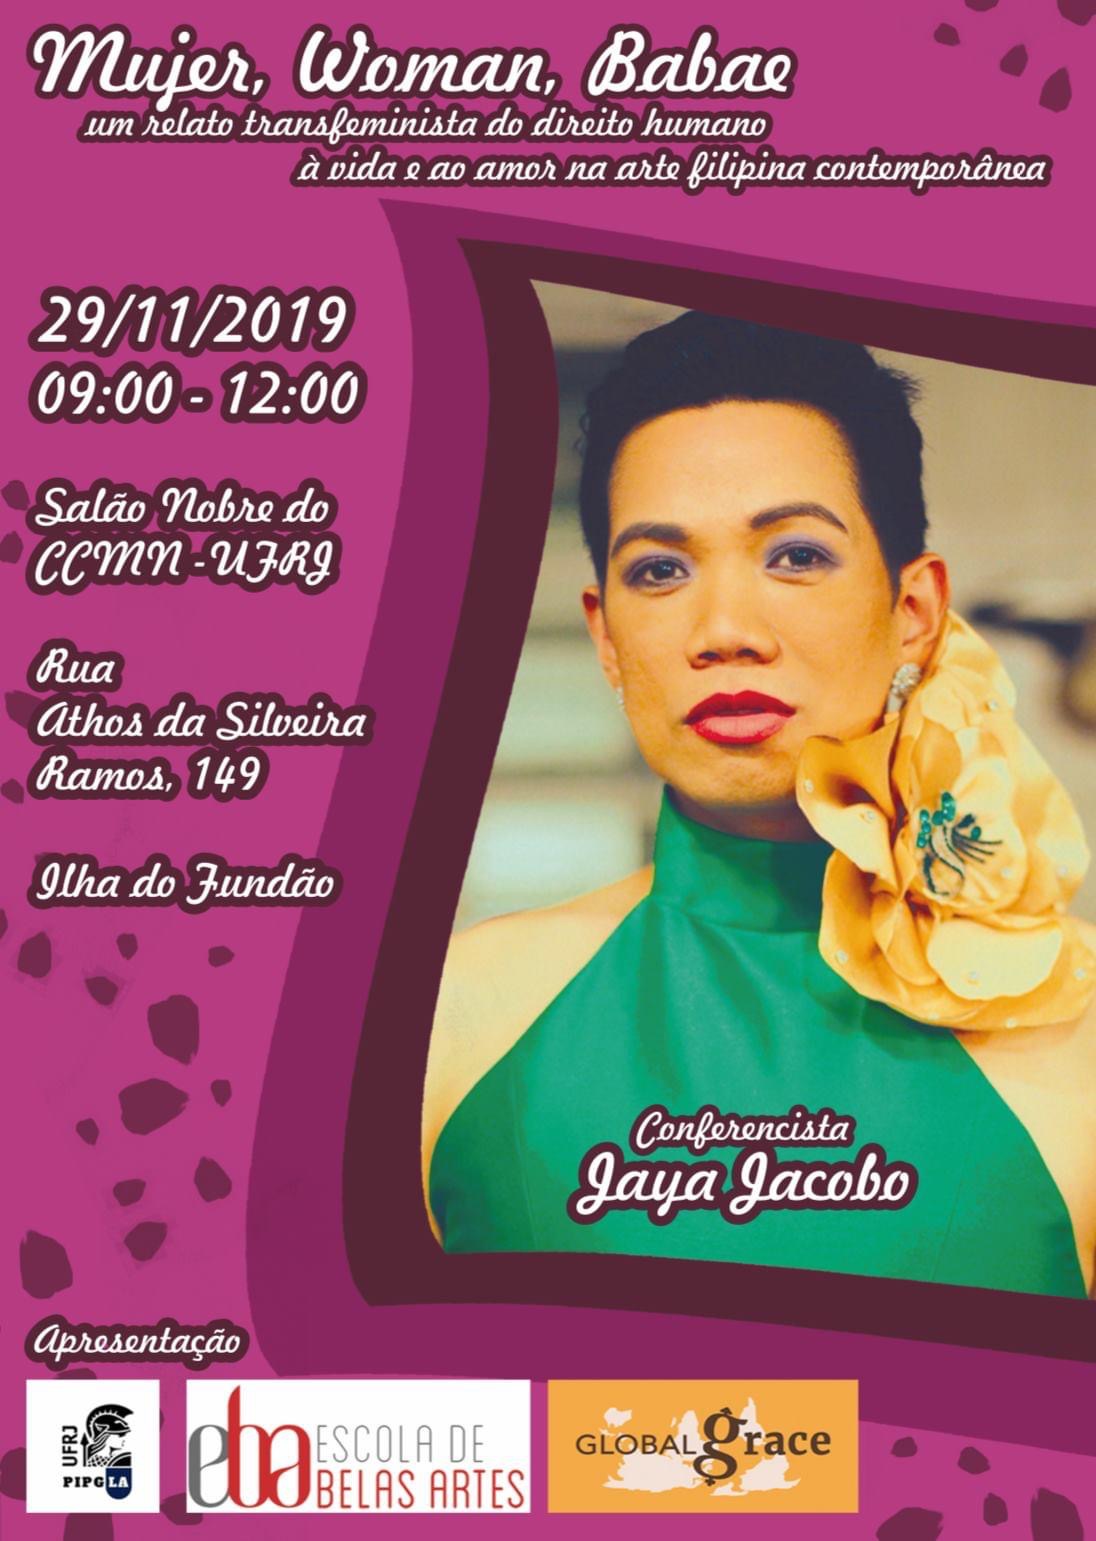 “Mujer, Woman, Babae: um relato transfeminista do direito humano à vida e ao amor na arte filipina contemporânea” com Jaya Jacobo